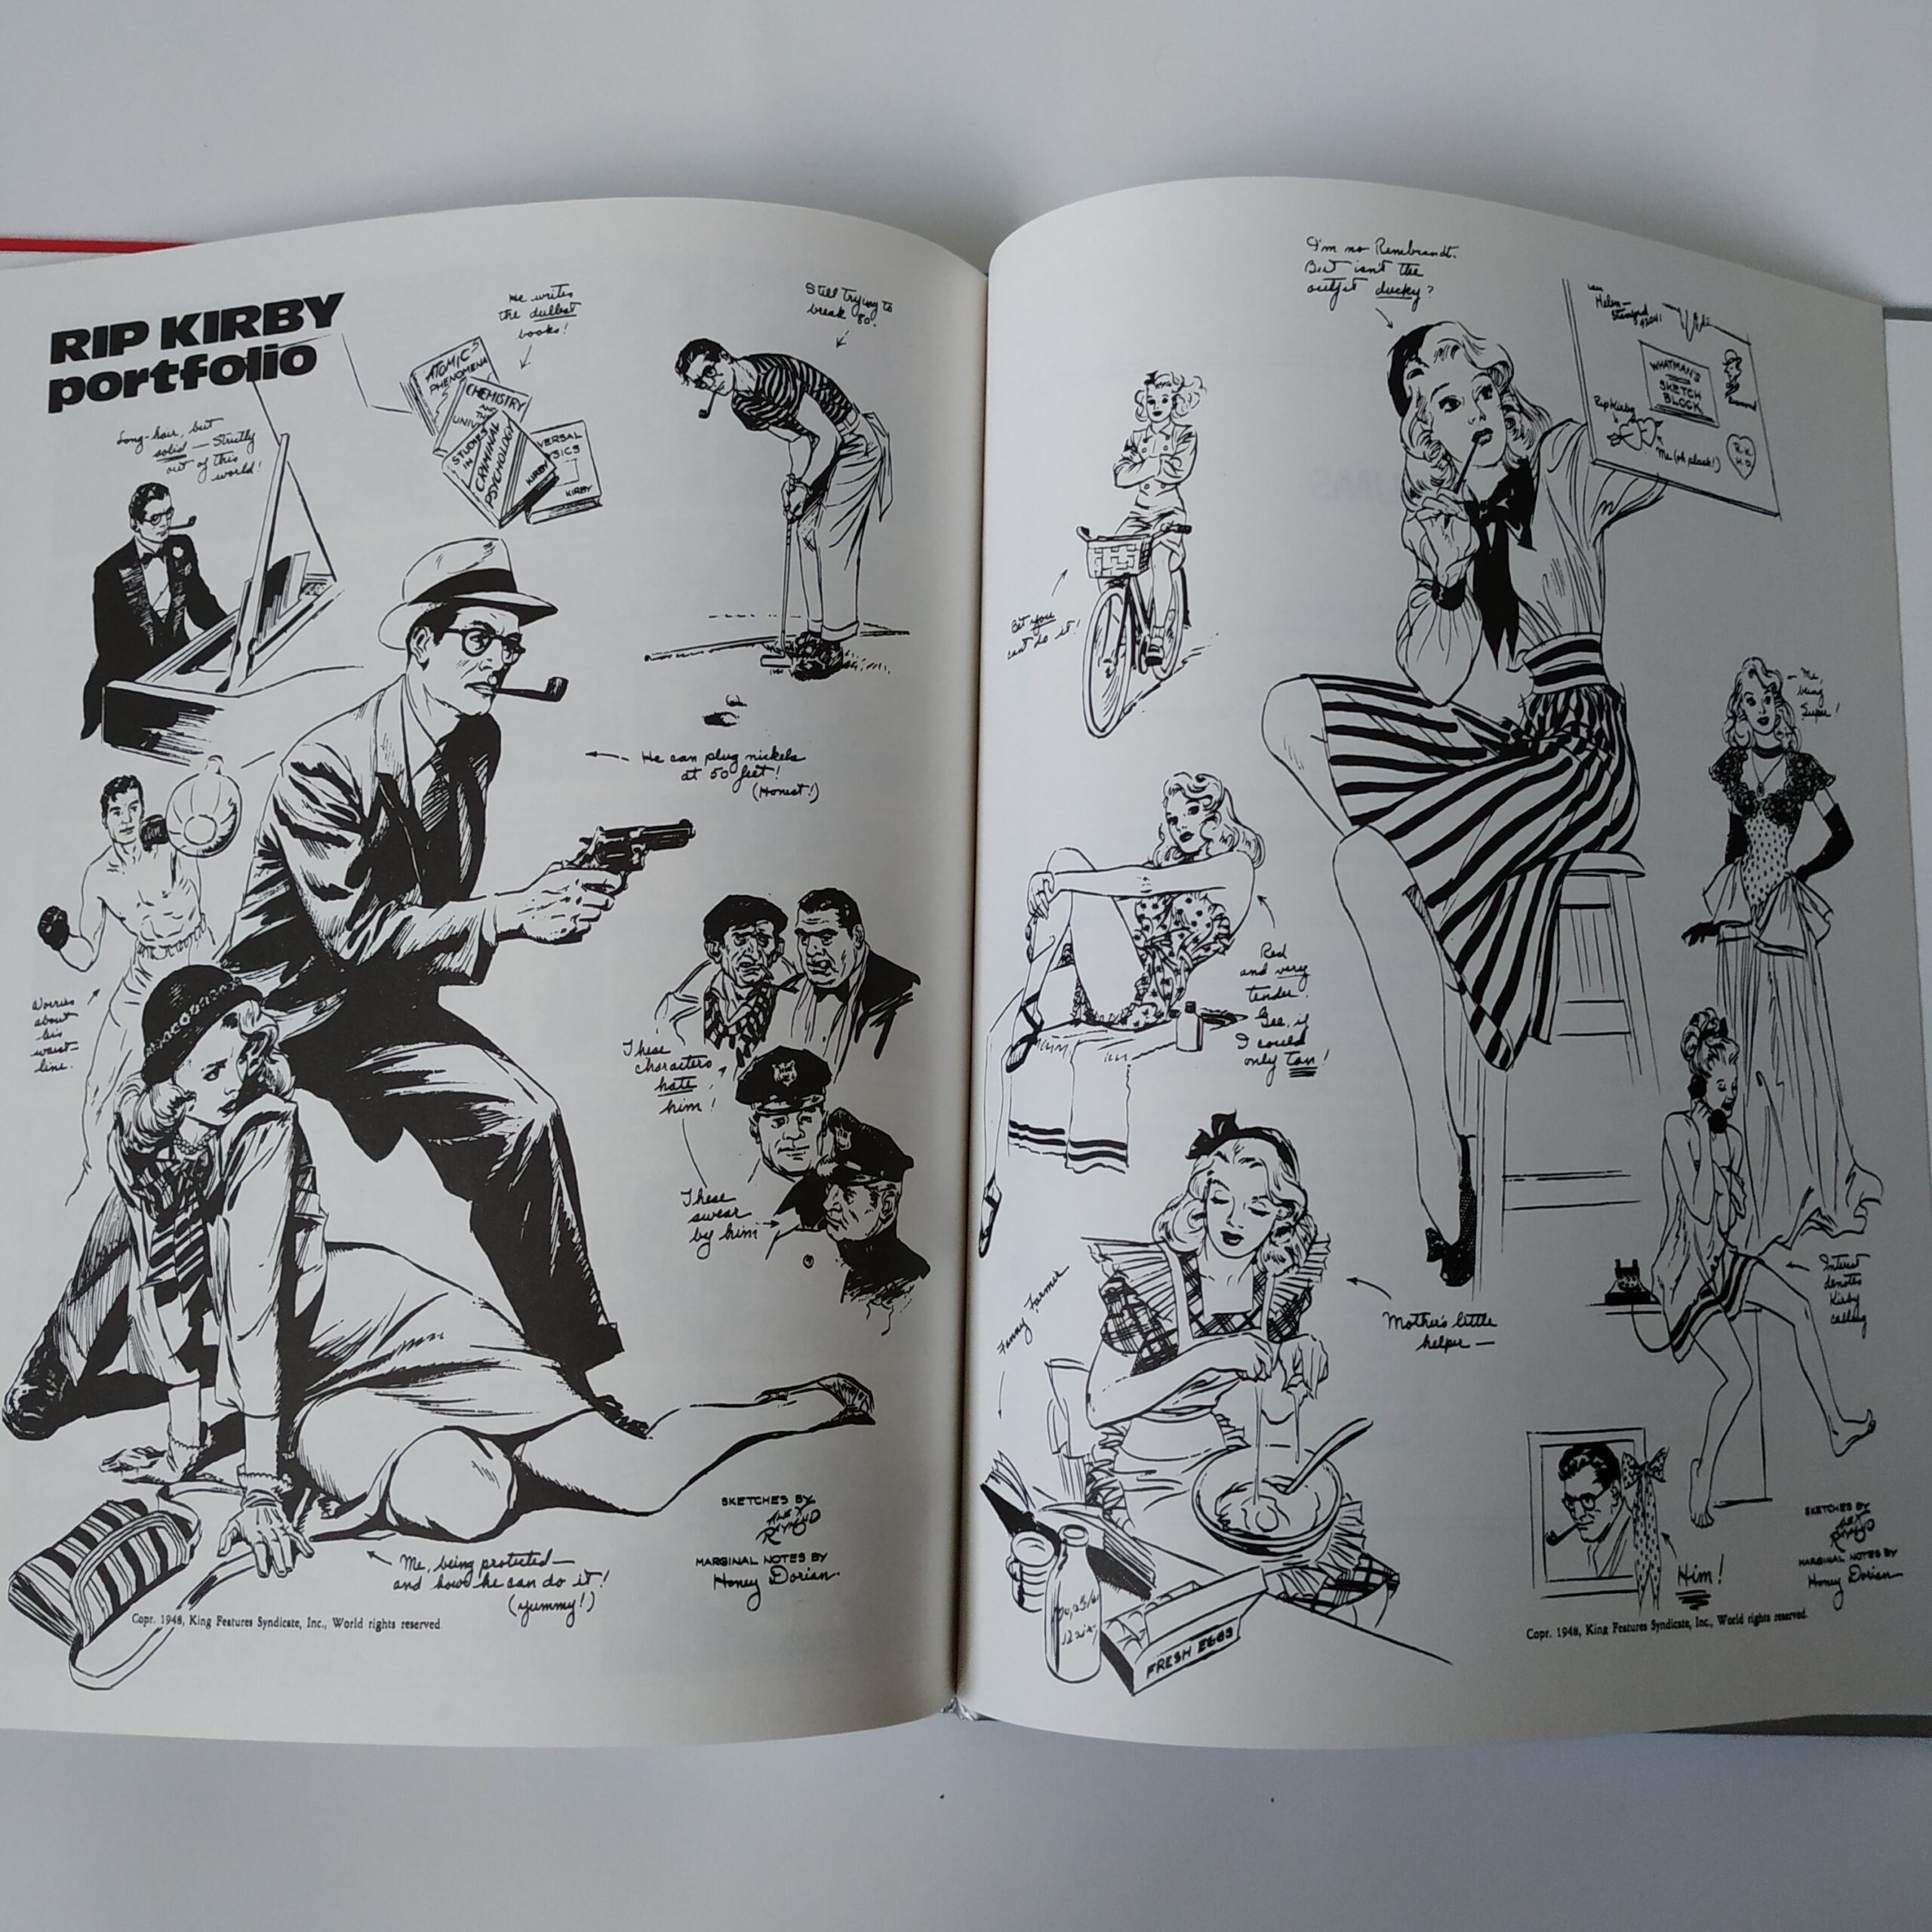 Stripboek Rip Kirby 2 – Het collier uit 1982 (7)